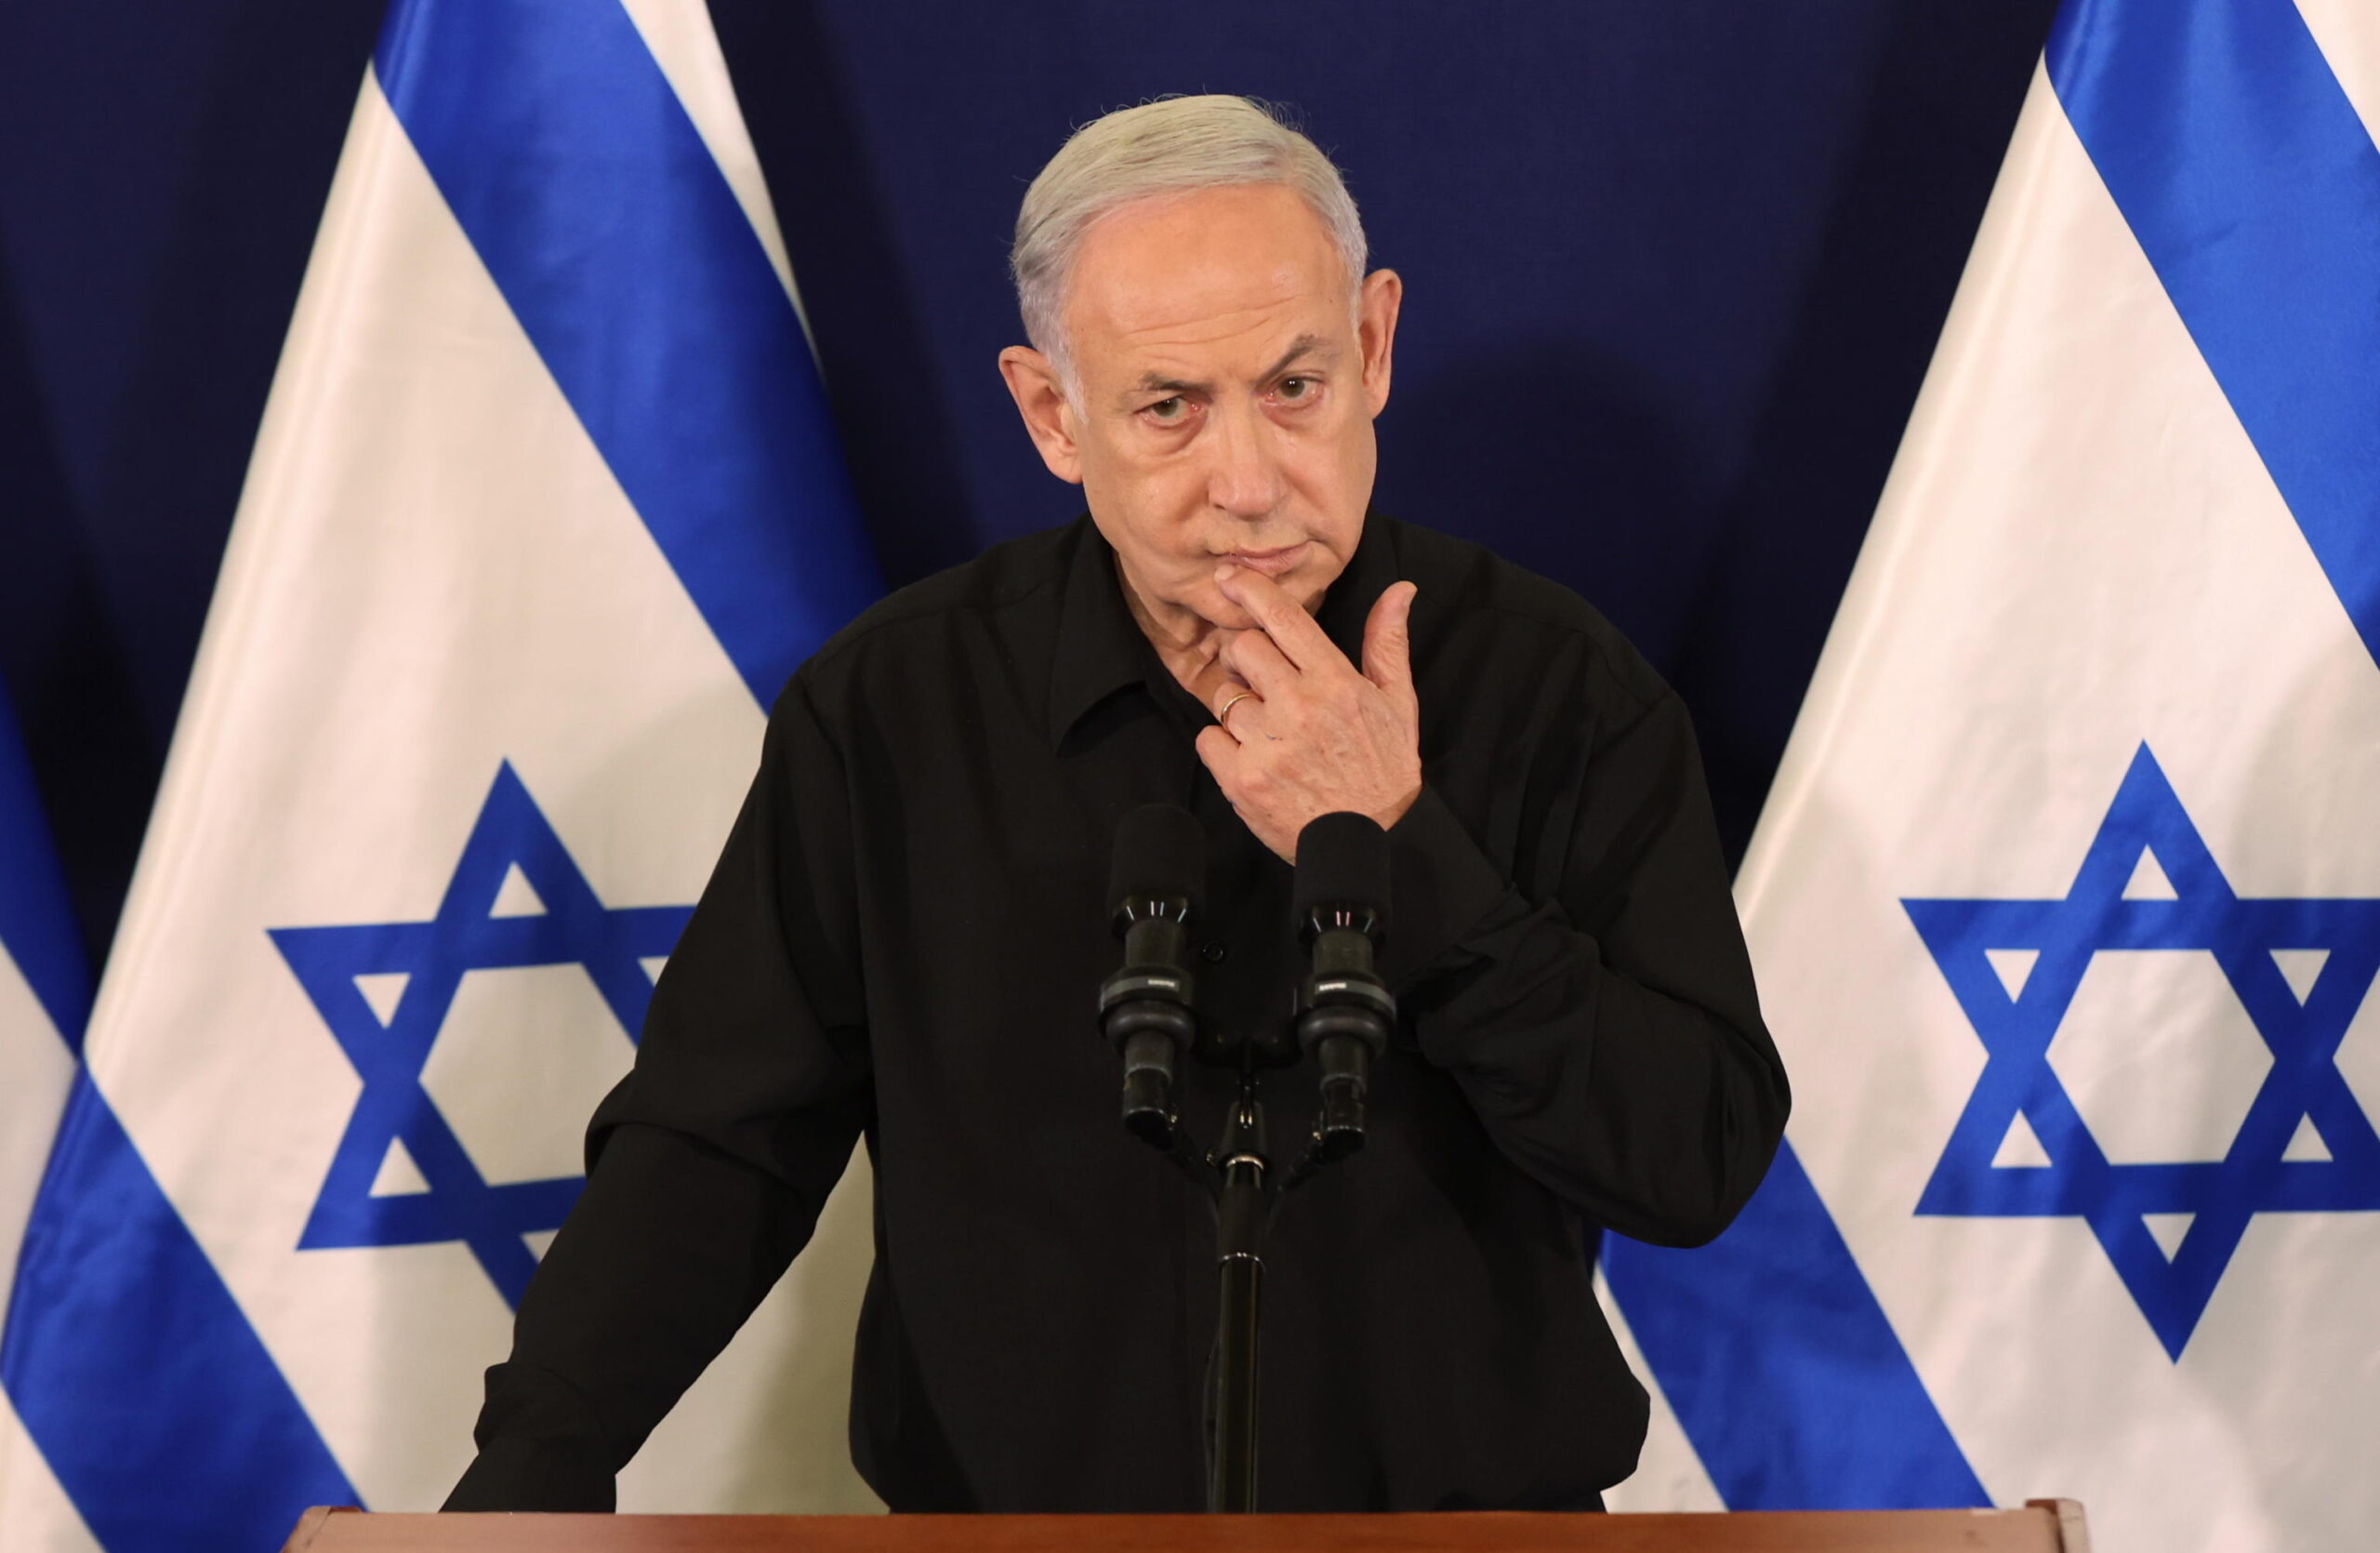 «Netanyahu deve essere rimosso, meglio un governo di unità nazionale senza di lui».  La mossa del rivale Yair Lapid mette in difficoltà il primo ministro israeliano